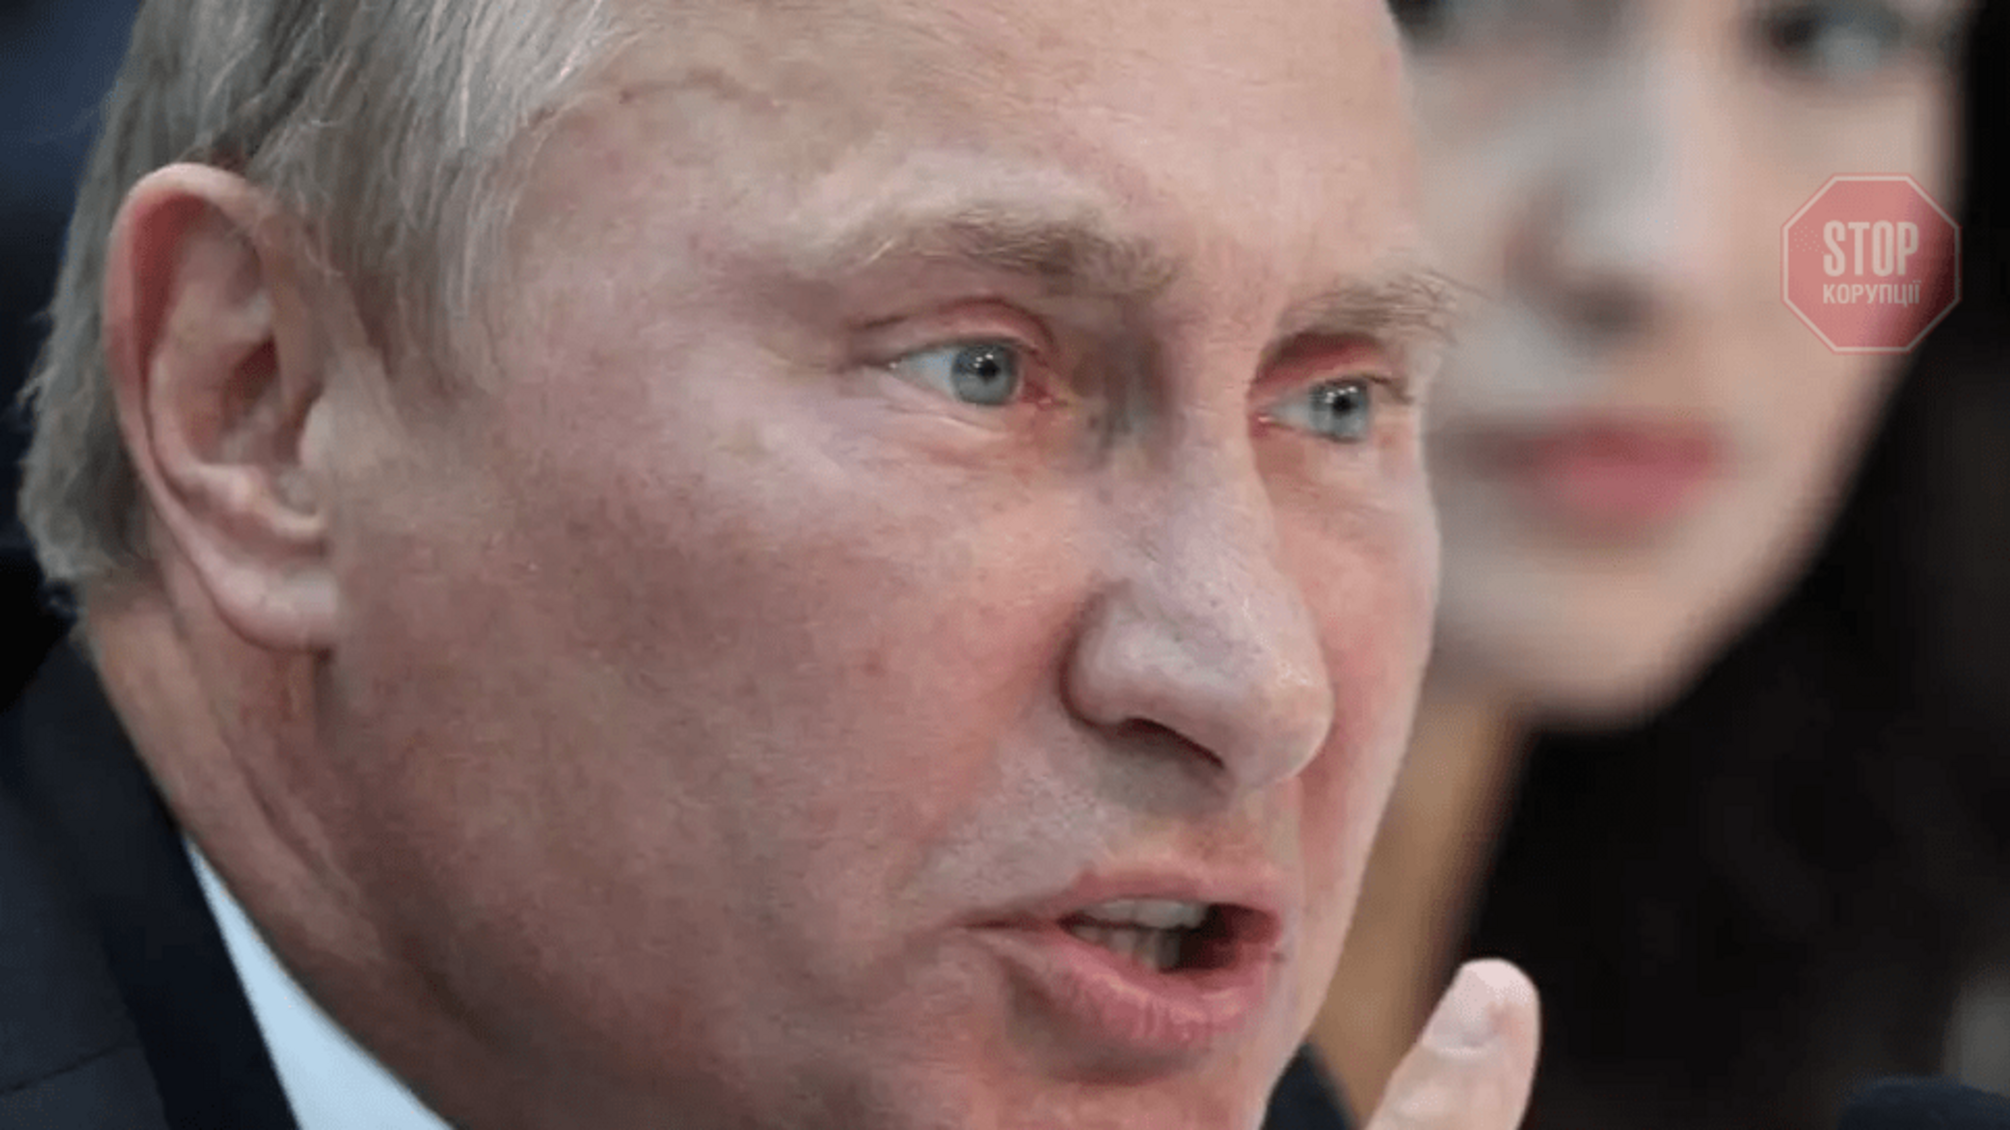 Резников: Путин своим признанием ''Л/ДНР'' де-факто вывел Россию из Минских соглашений